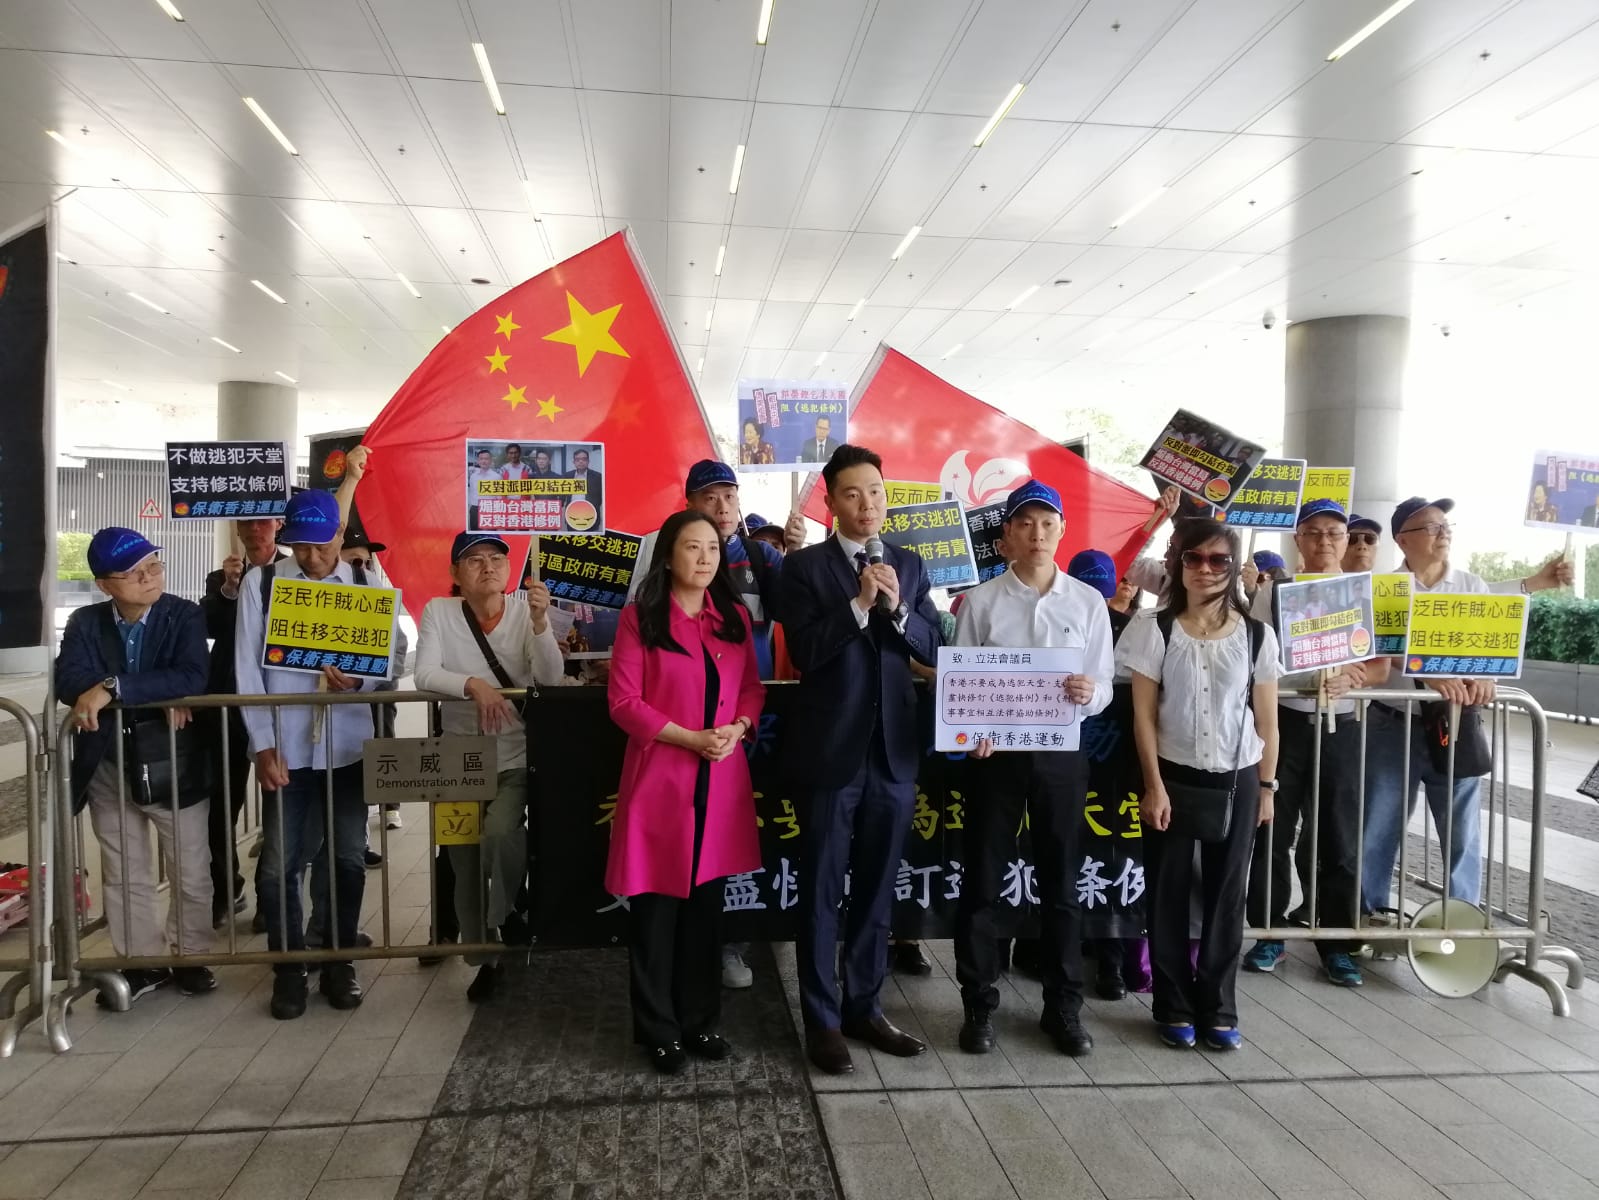 保衛香港運動 主辦「支持修改逃犯條例」遊行集會